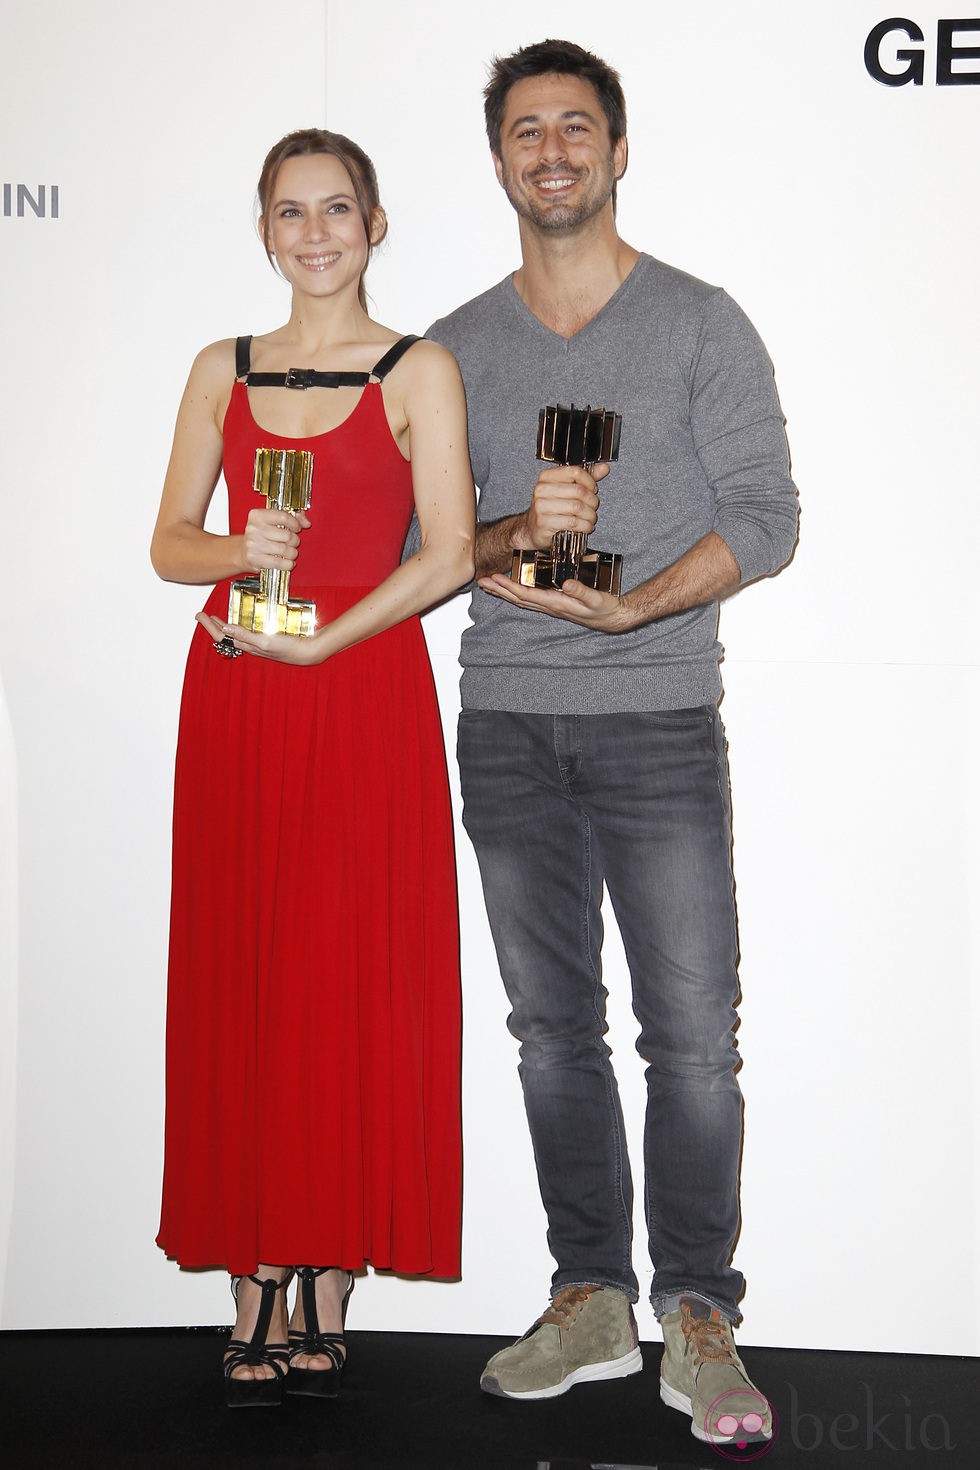 Hugo Silva y Aura Garrido recogen el Premio Carmen a la Belleza más Internacional del Cine Español